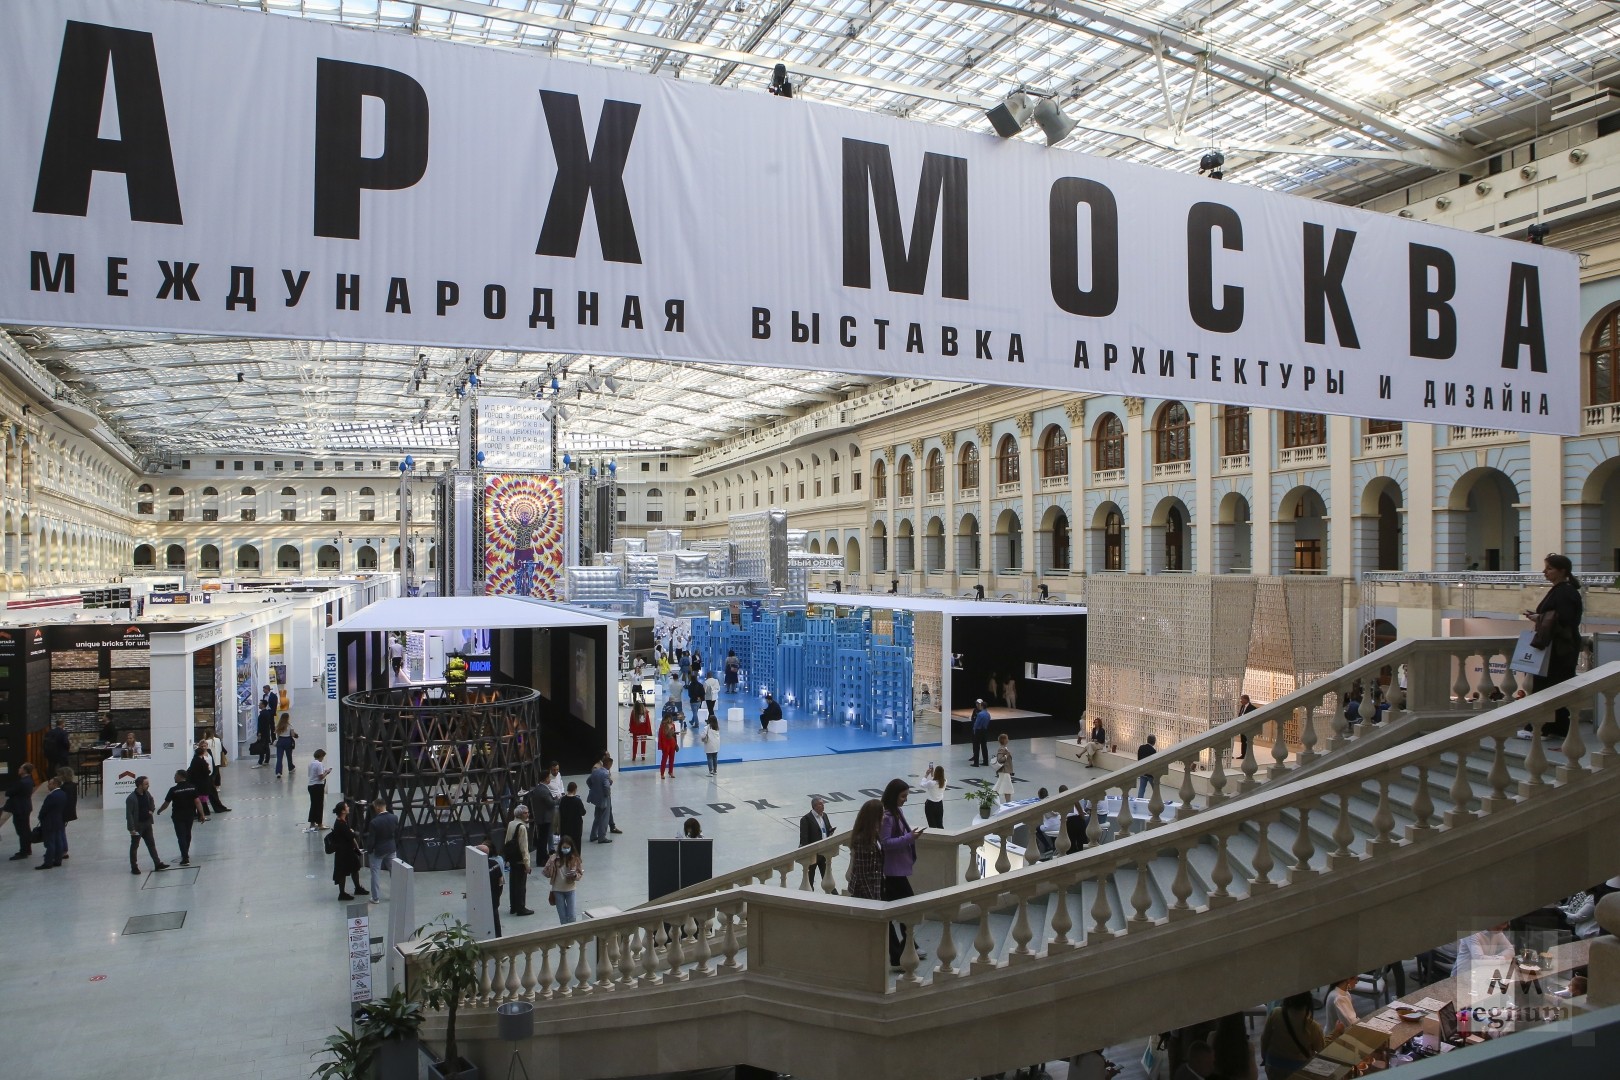 XXVII Международная выставка-форум архитектуры и дизайна "АРХ Москва 2022" в г. Москва 